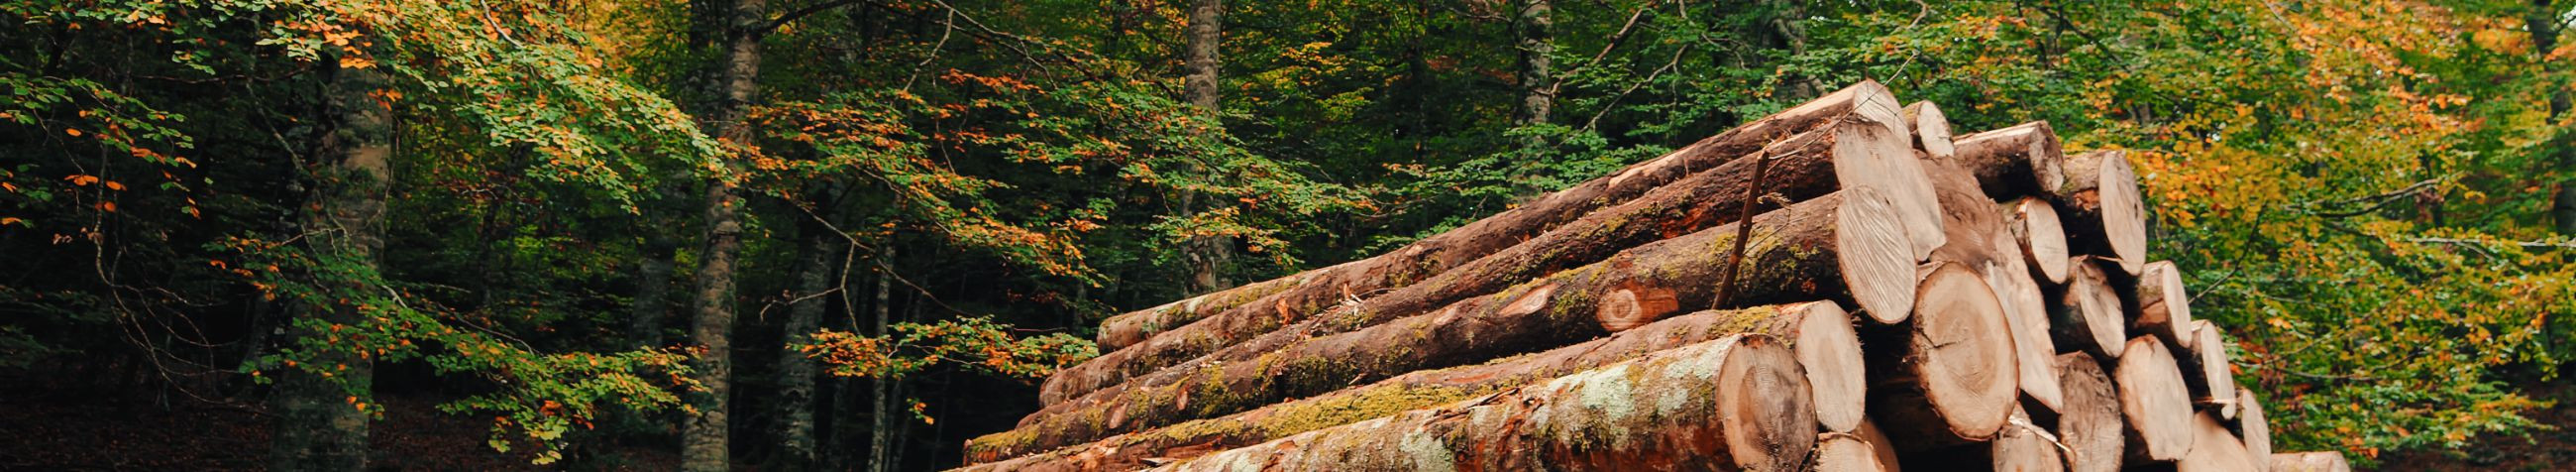 investeeri metsamaasse, osta metsaõigusi, müügil olevad metsakinnistud, jätkusuutlikud metsandusinvesteeringud, metsandustööstus, metsakinnisvara tehingud, lageraie, valgusraie, Valikraie, metsamajandamise ettevõtted